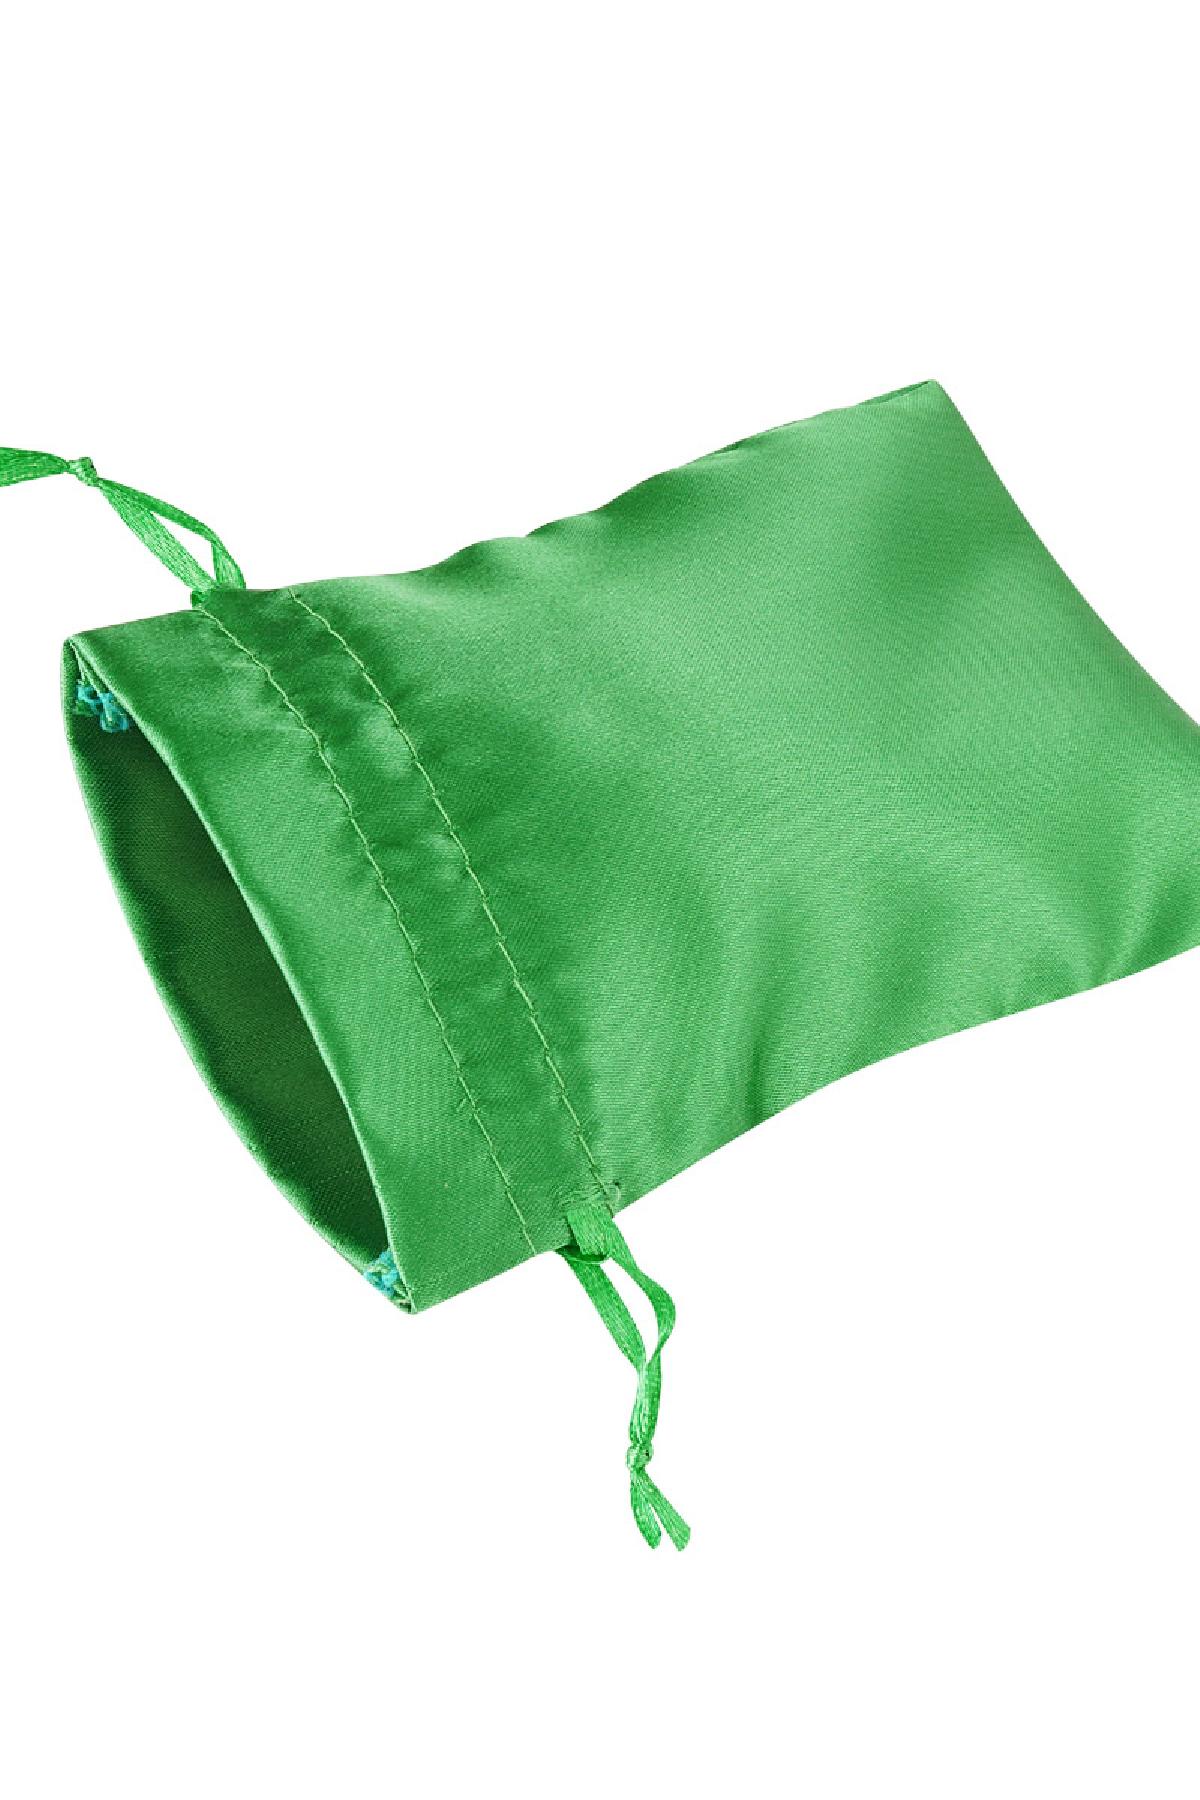 Sieradenzakjes satijn klein - groen Polyester h5 Afbeelding2